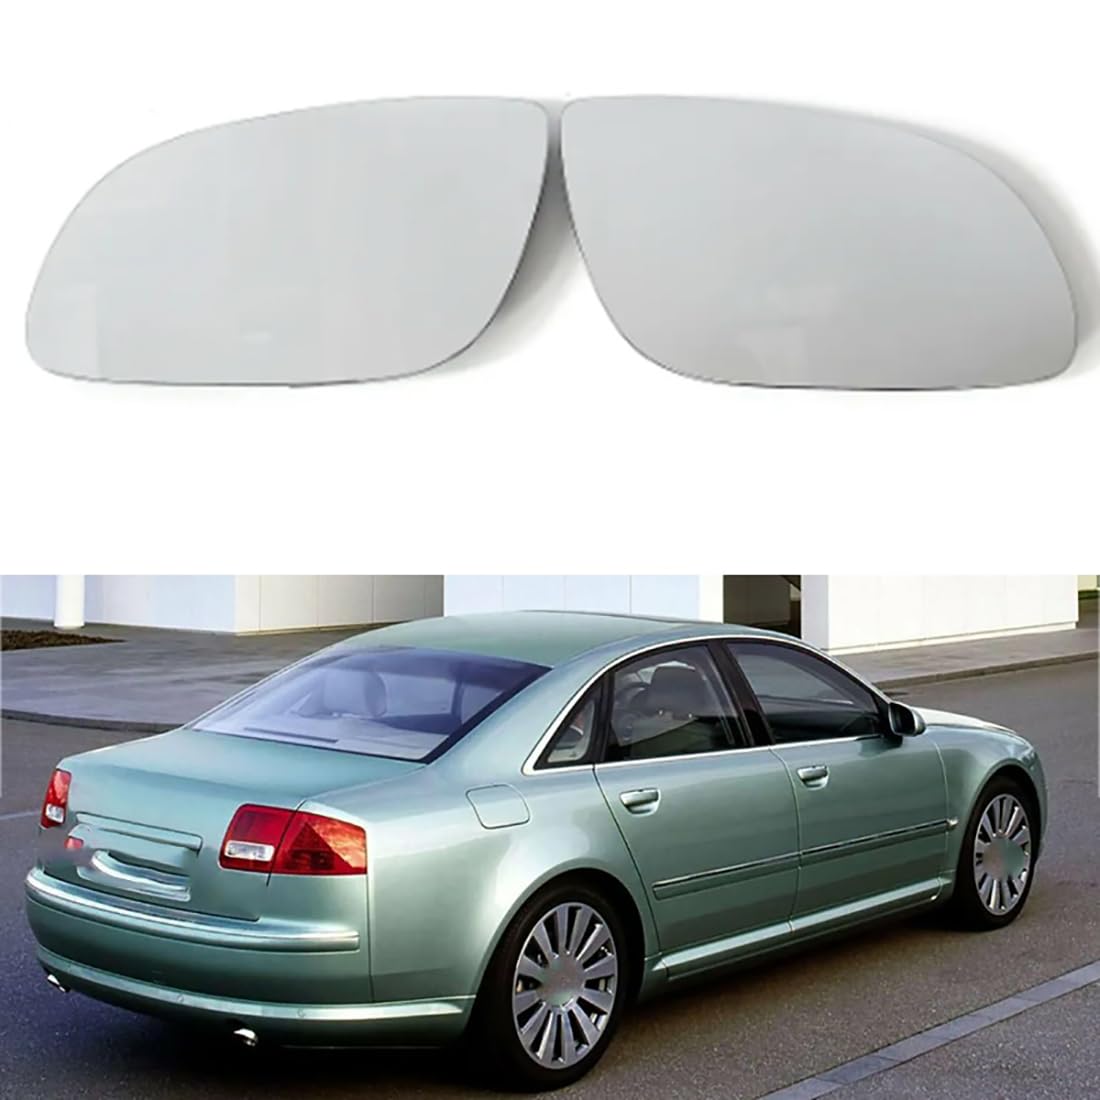 Austauschbarer Auto-Außenspiegel aus Beheizbarem Glas für Audi A8 2002-2008,beheizbarer Rückspiegel für Fahrer und Beifahrer Links/rechts,B-Right von YujieNB